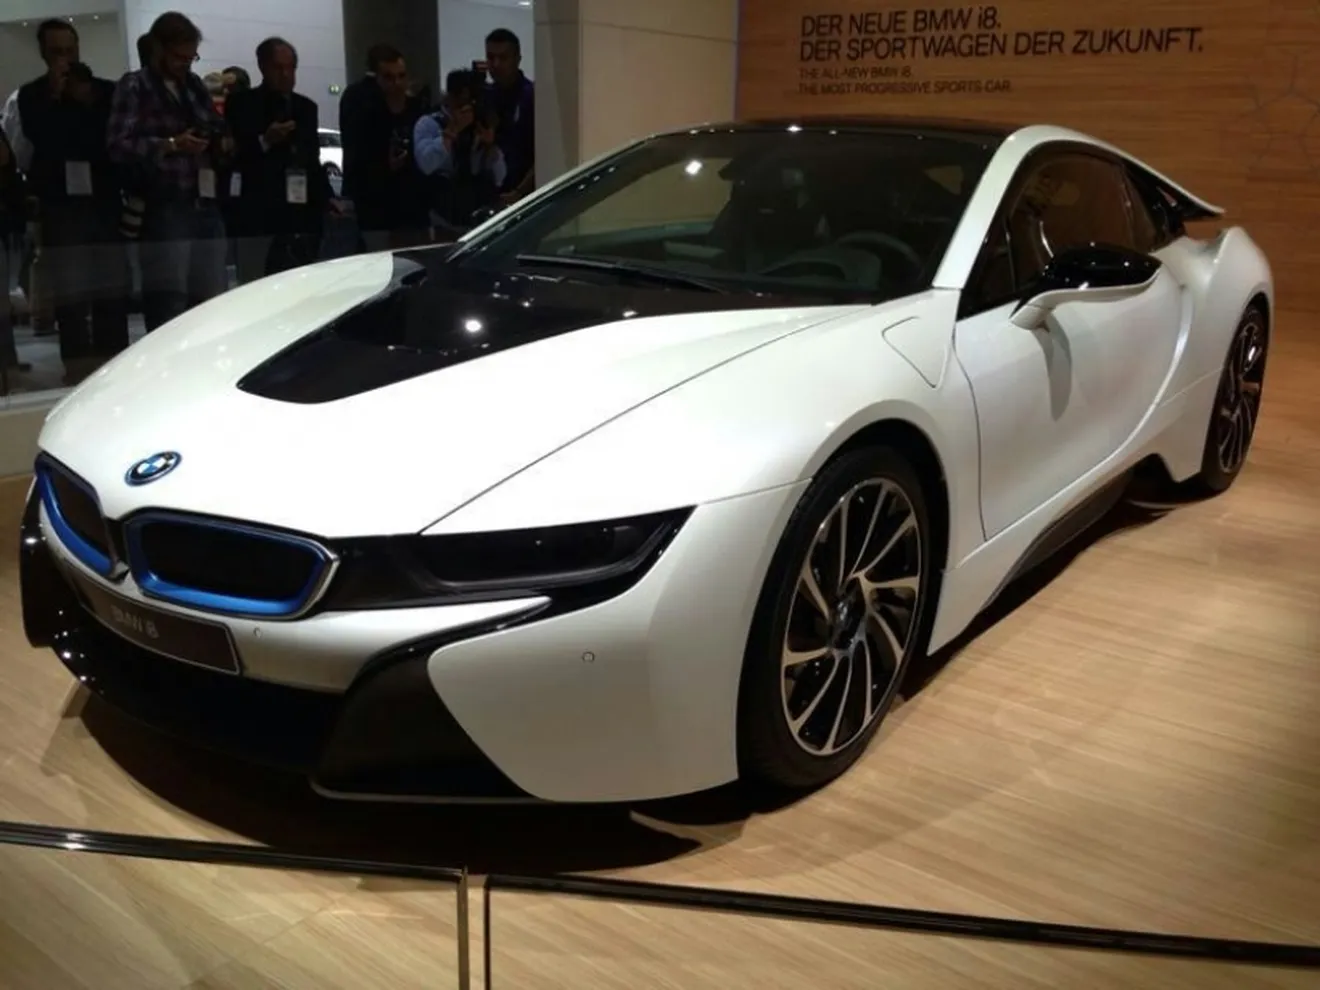 Nuevo BMW i8, todo lo que necesitas saber del deportivo híbrido alemán